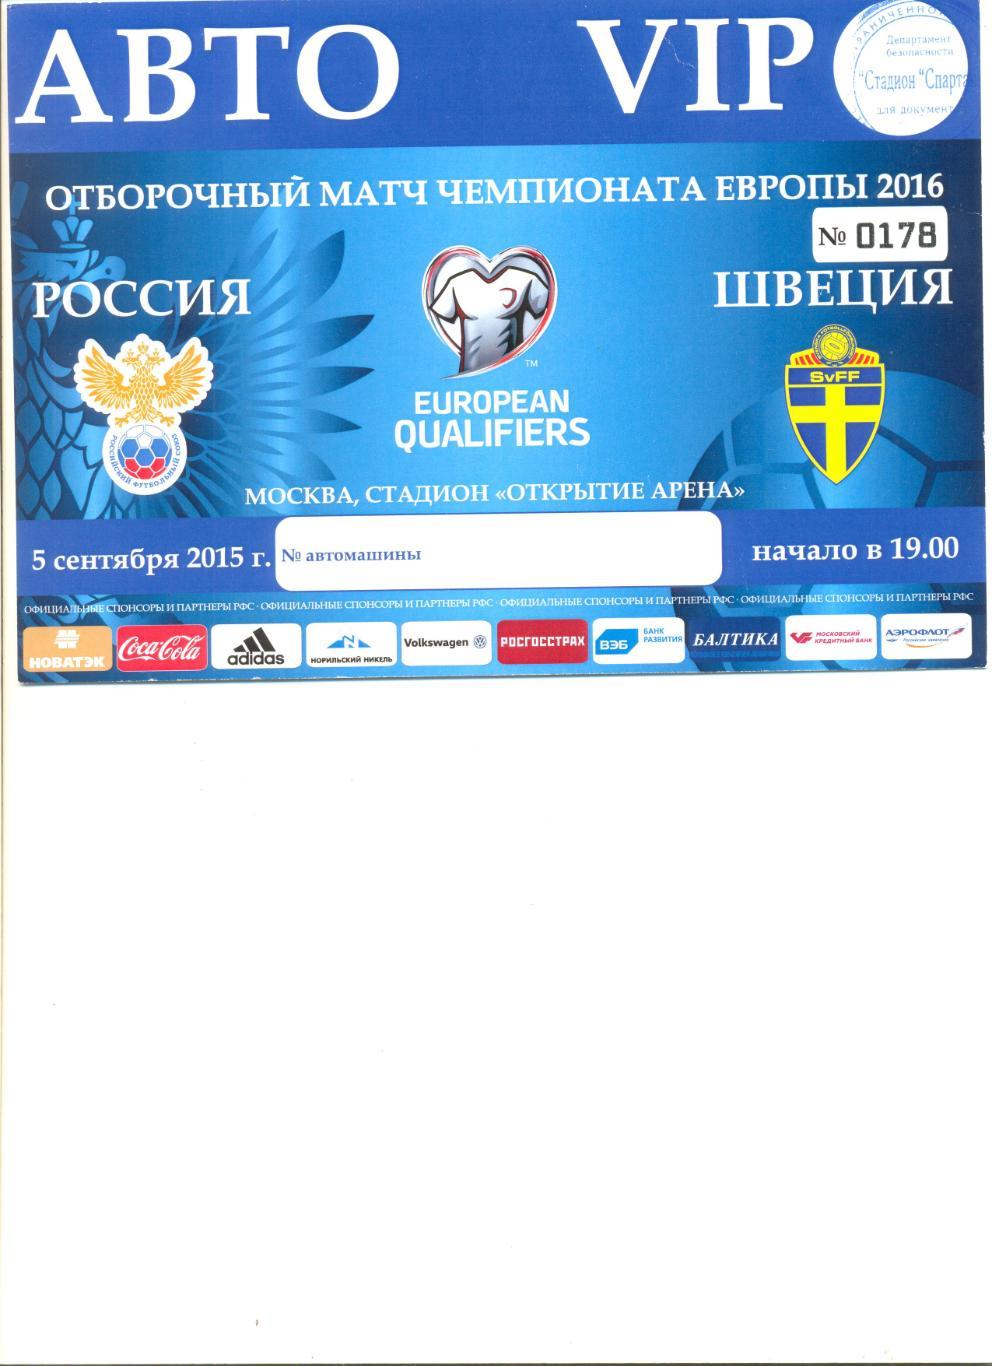 Пропуск Авто VIP на матч Россия - Швеция 05.09.2015 г. стадион Открытие Арена.